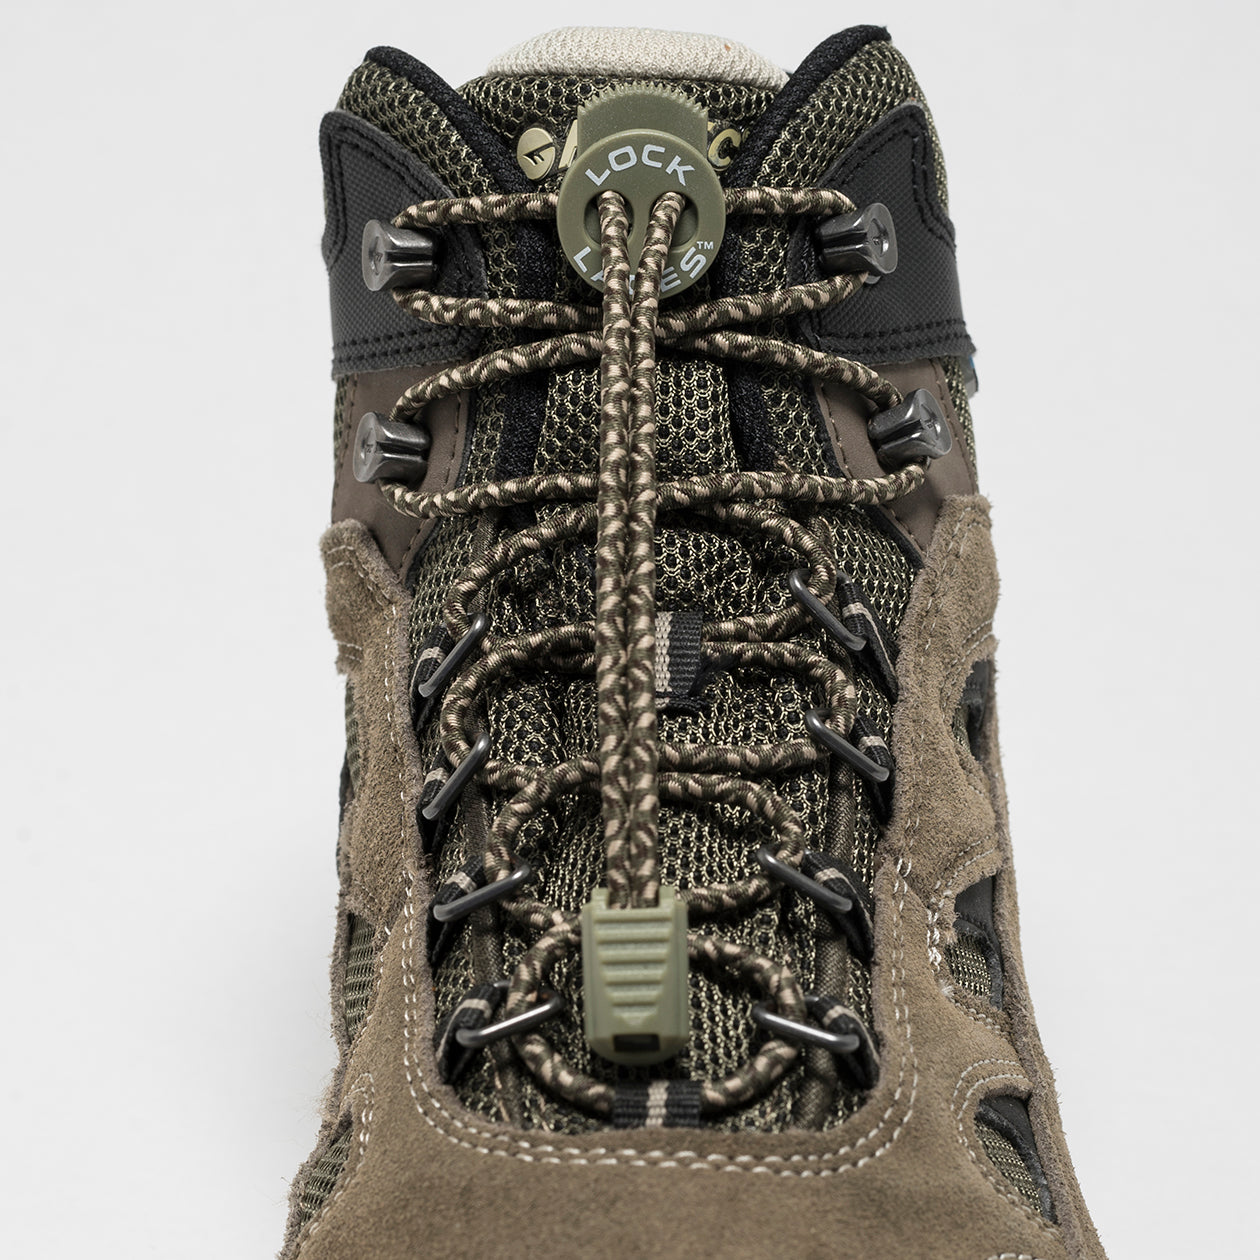 Boot No-Tie Shoelaces